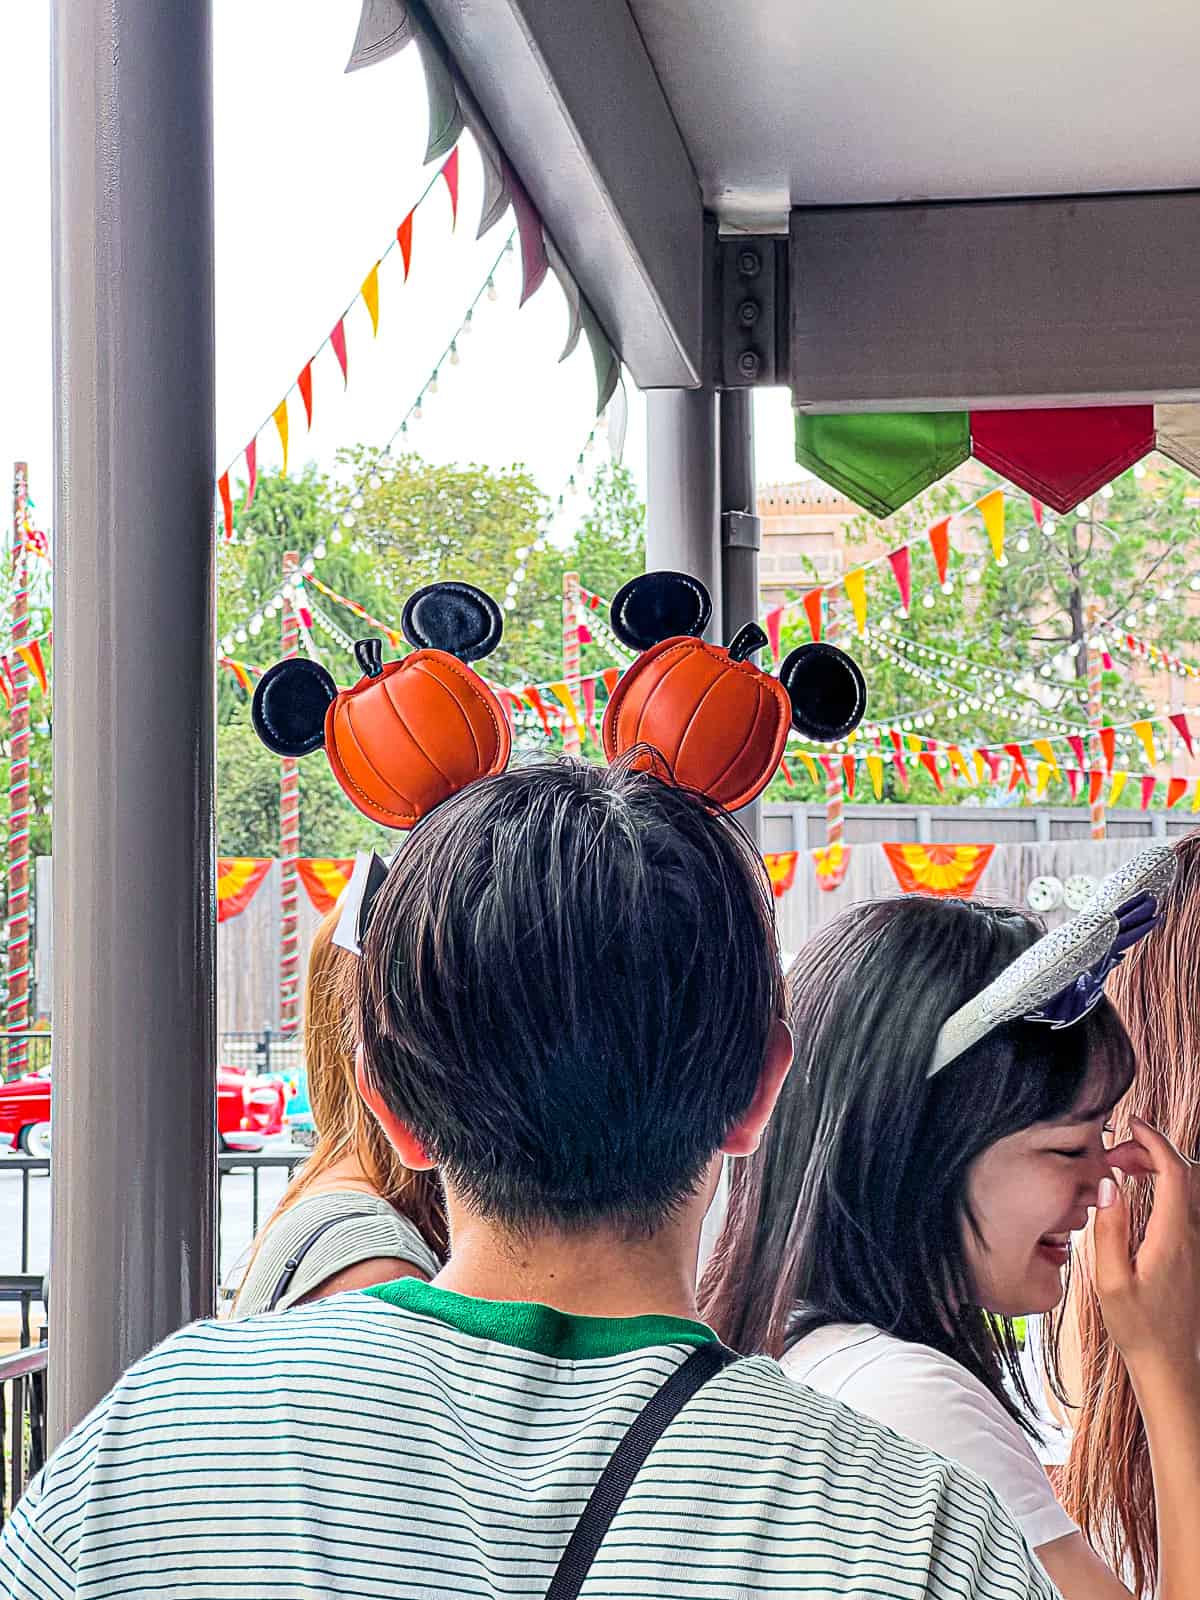 Halloween Mickey Ears seen at Disneyland